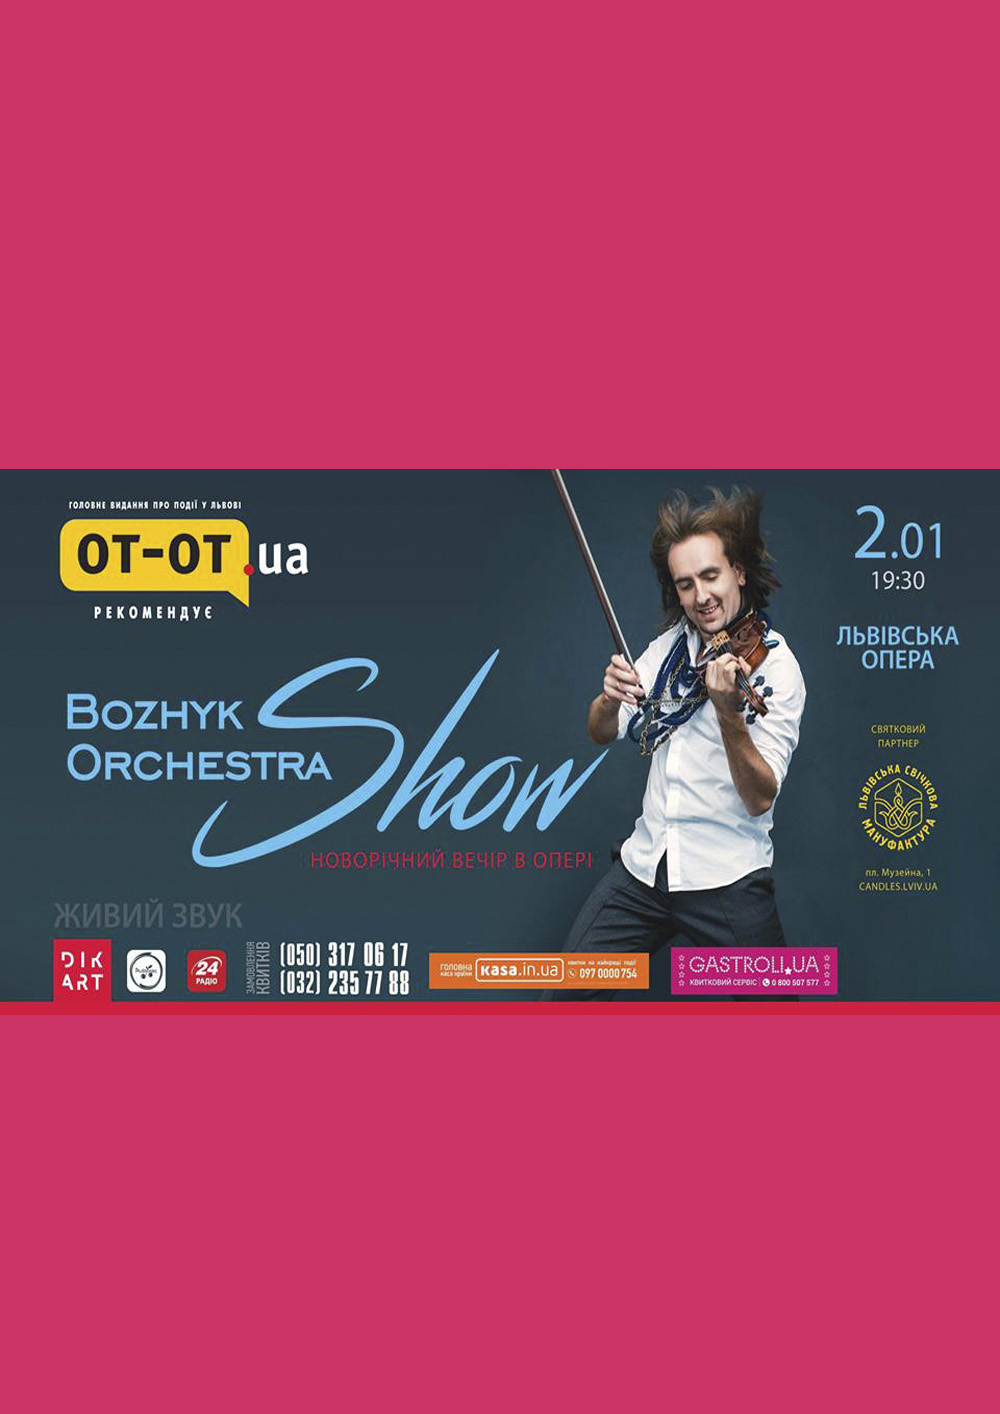 Bozhyk Orchestra Show 